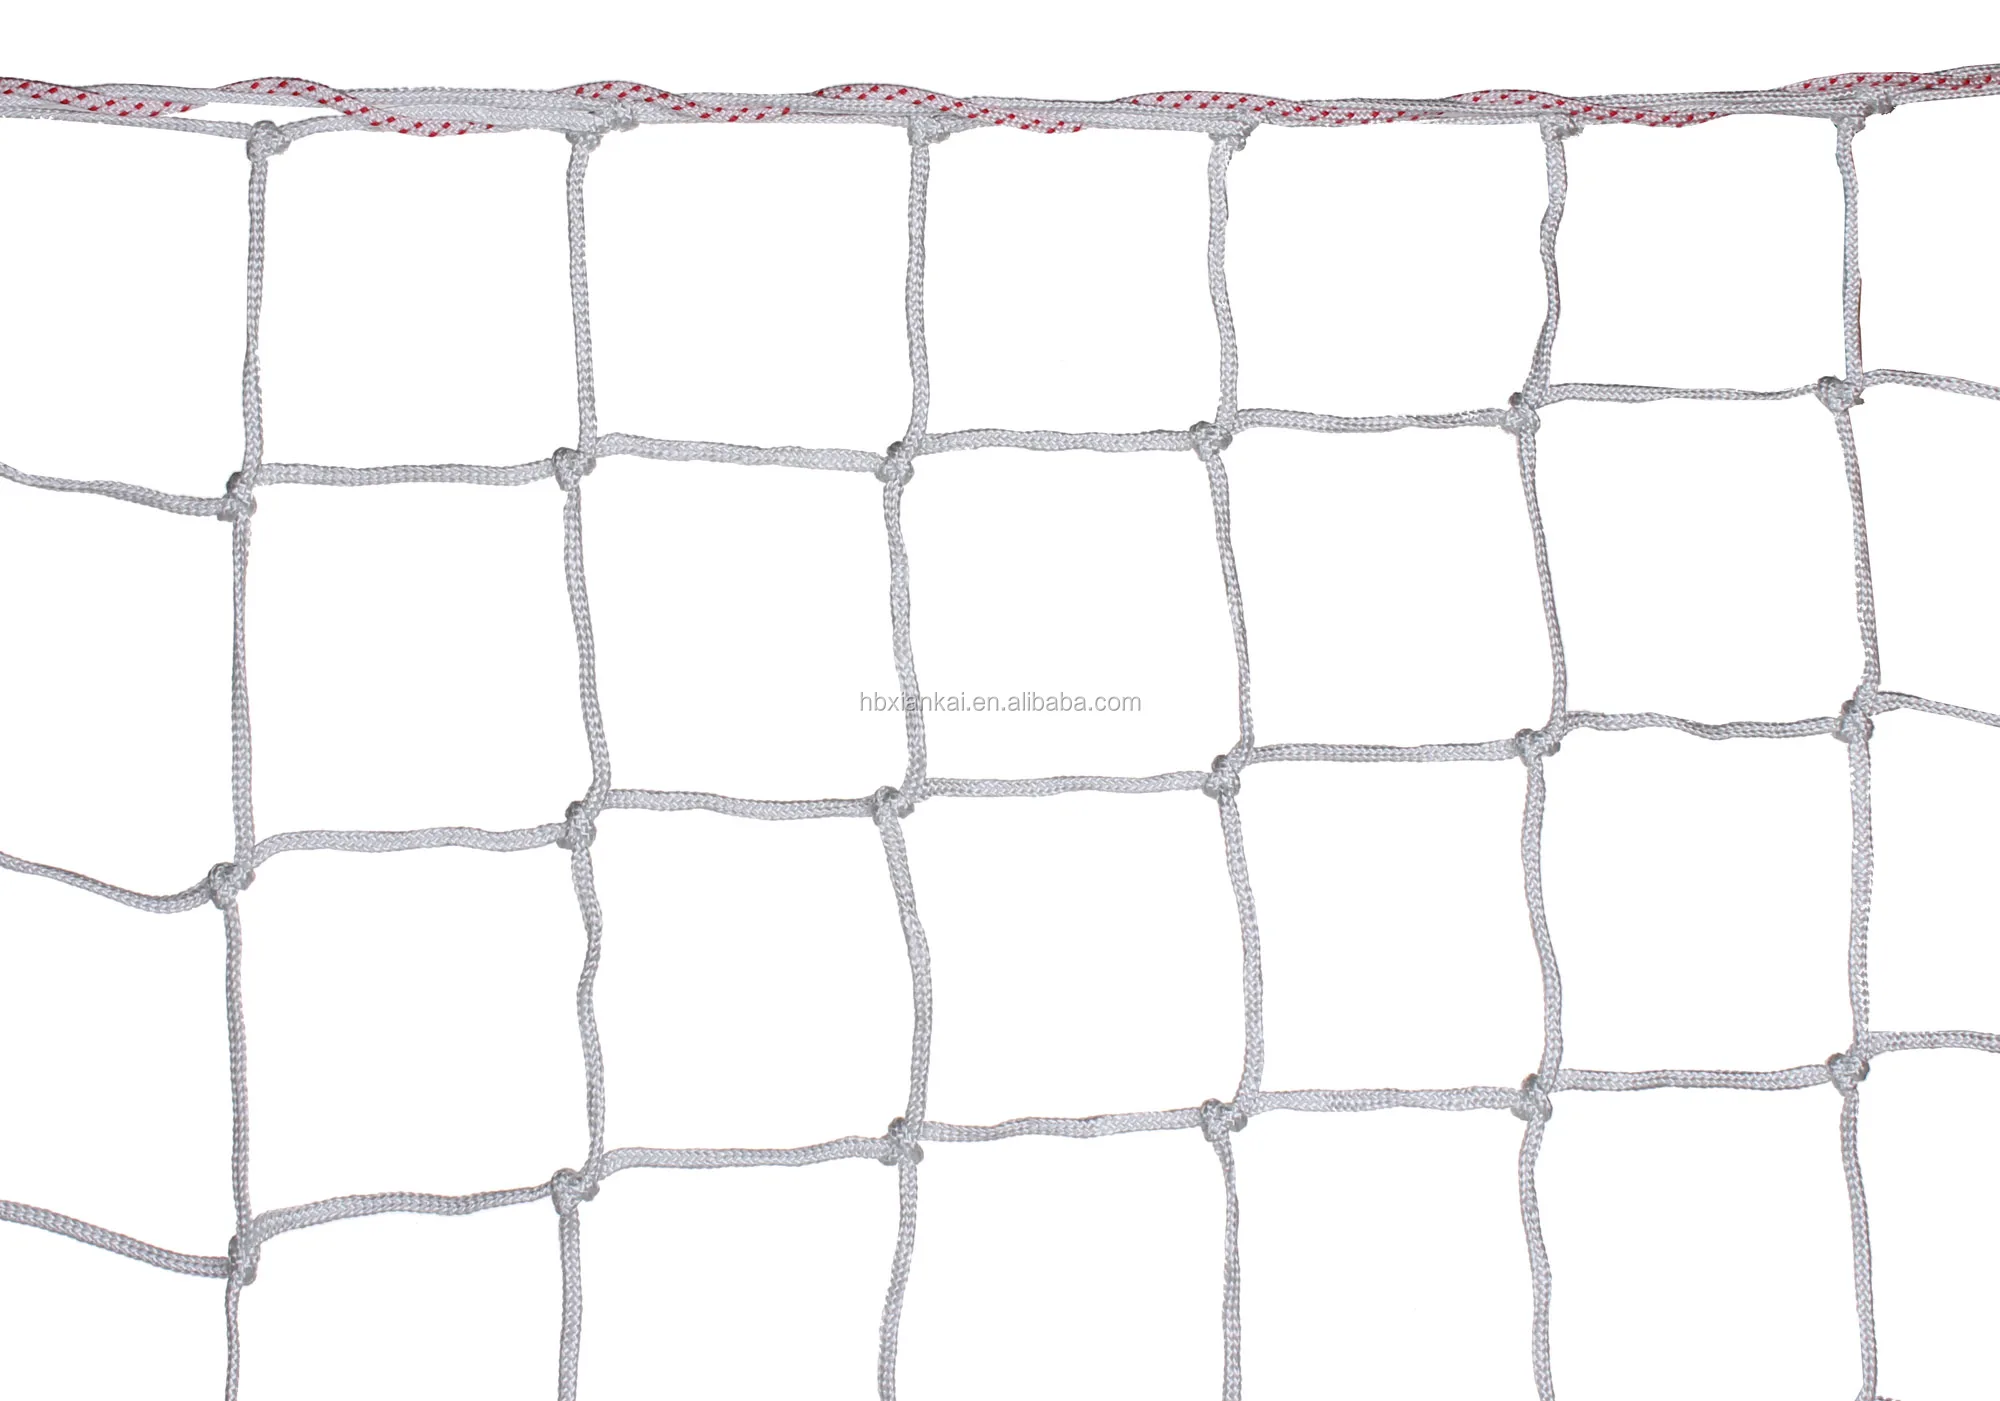 ツイスト 編組正方形または六角形のサッカーゴールネット サッカーゴールネット Buy Soccer Goal Net Product On Alibaba Com